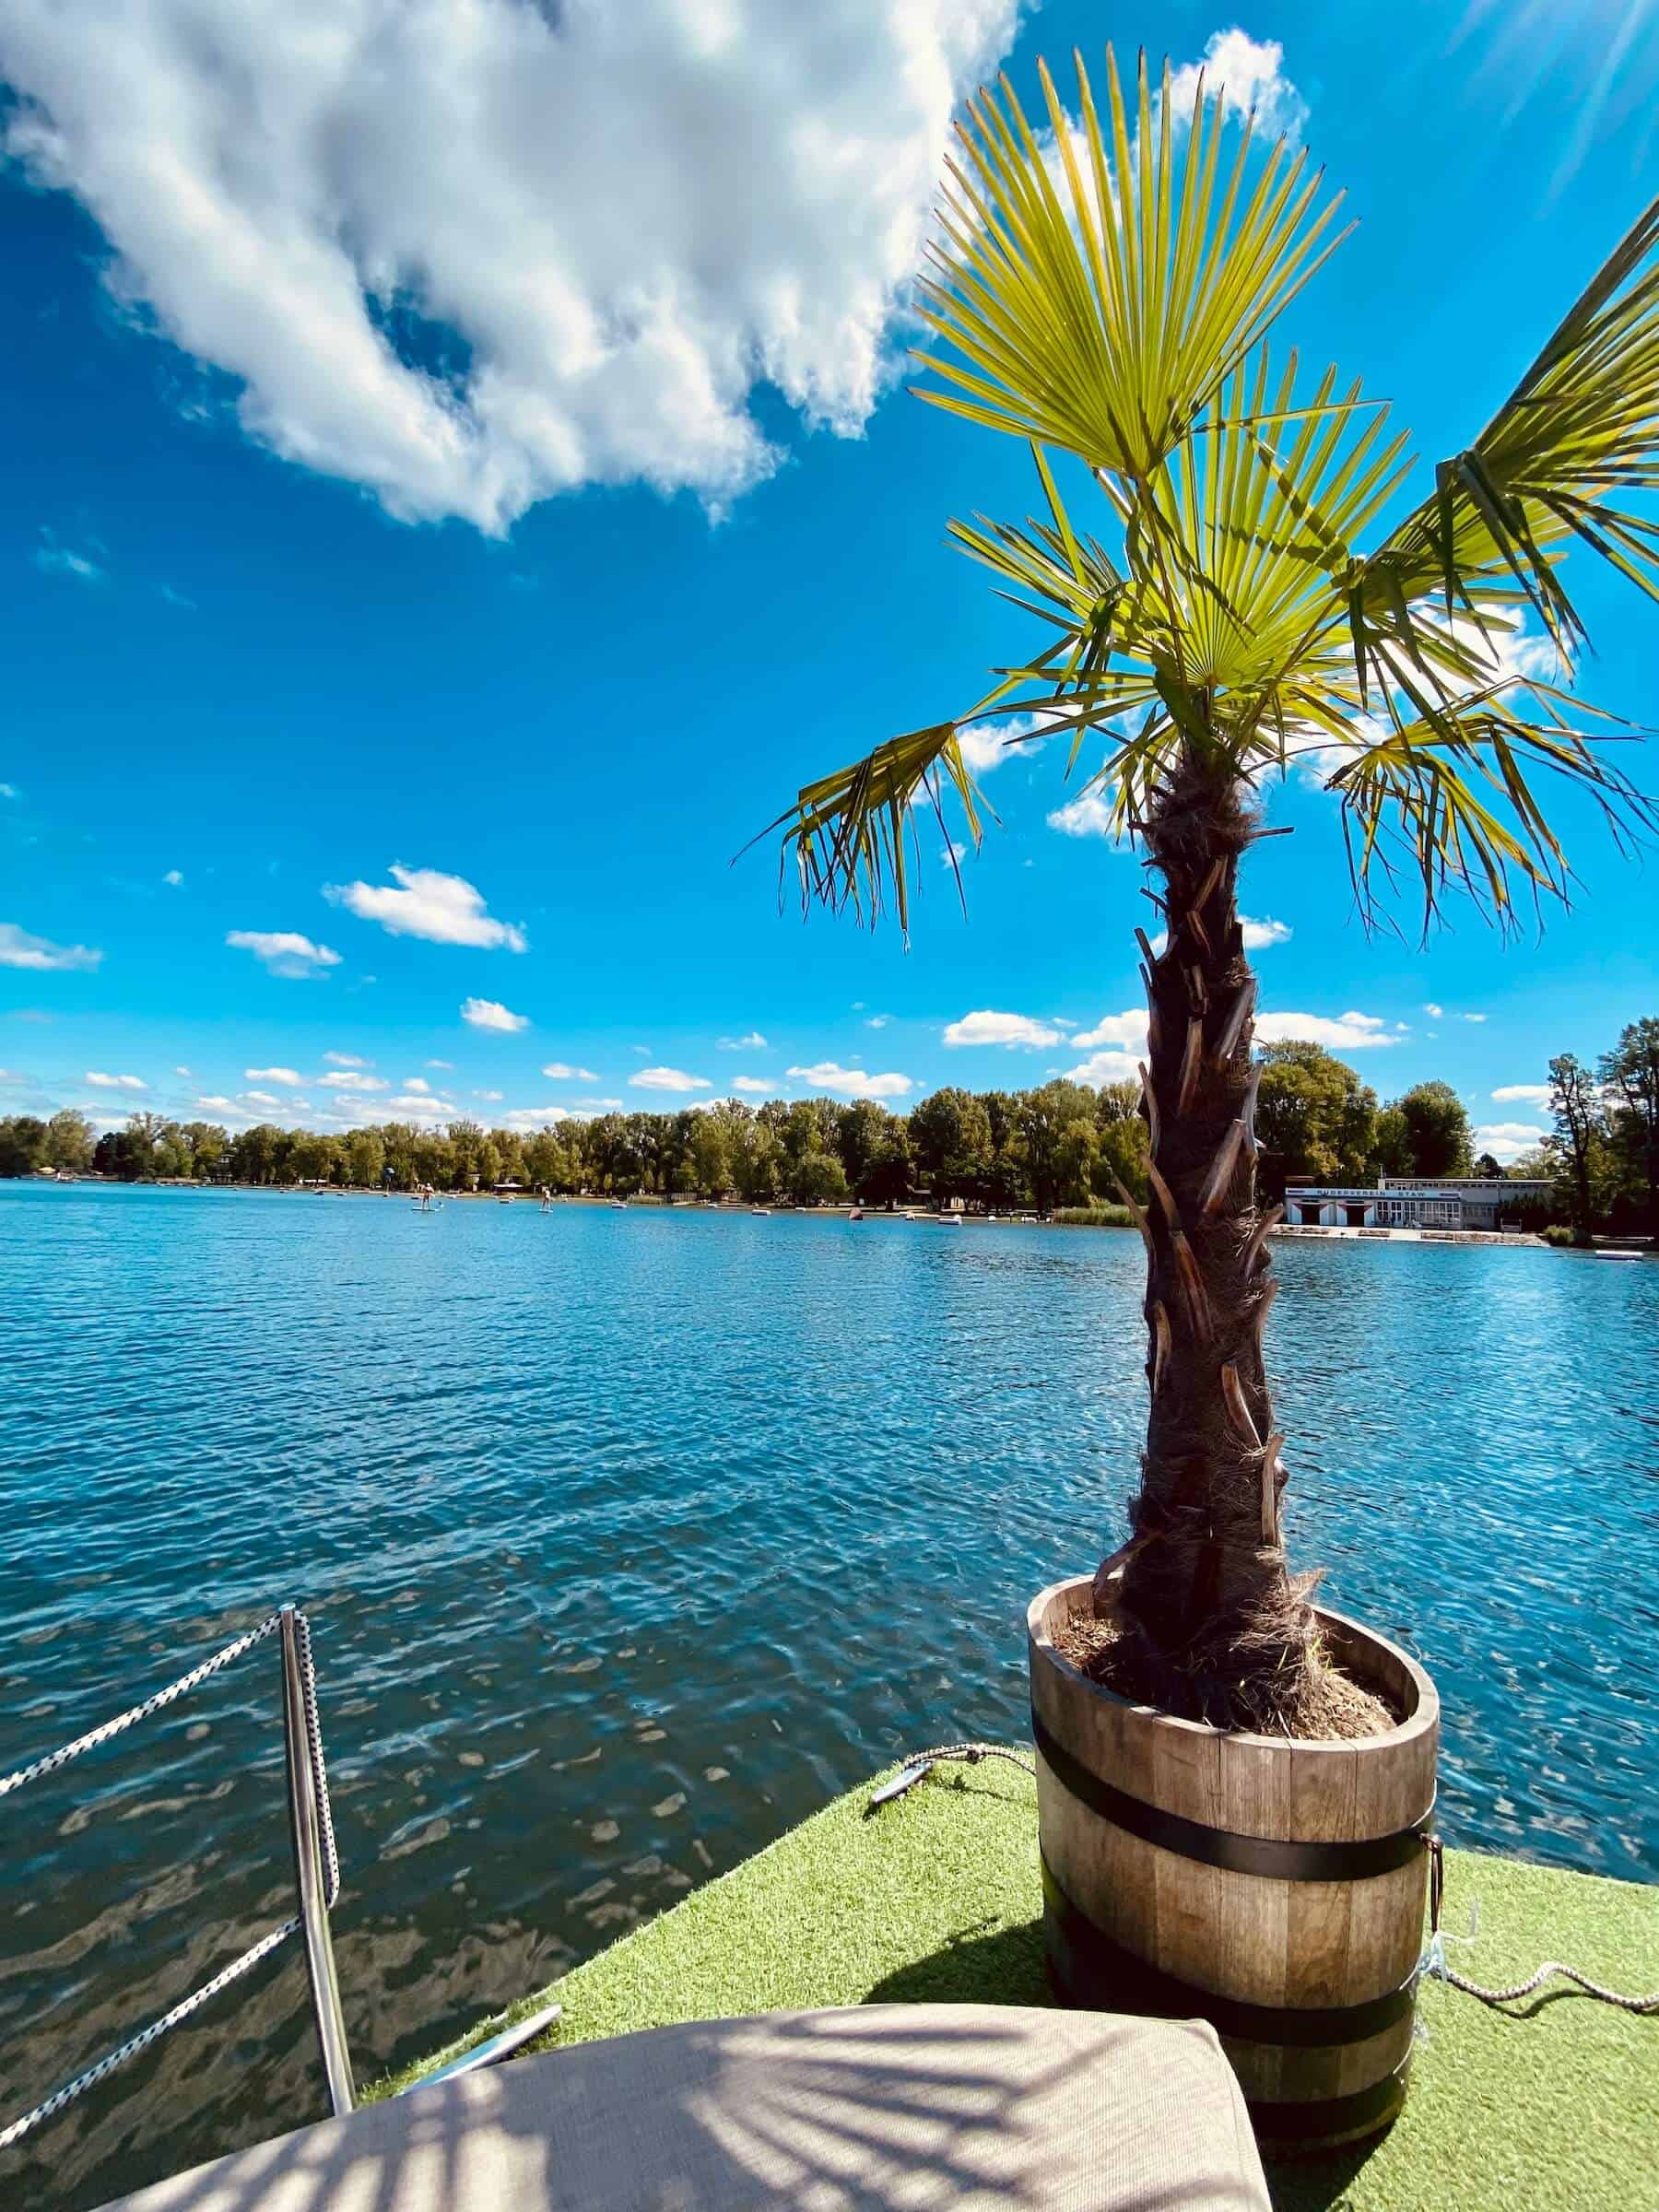 Alte Donau mit schimmernd blauen Wasser. Eine Palme steht am Rand vom Boot. Eine schöne weiße Wolke am Himmel.